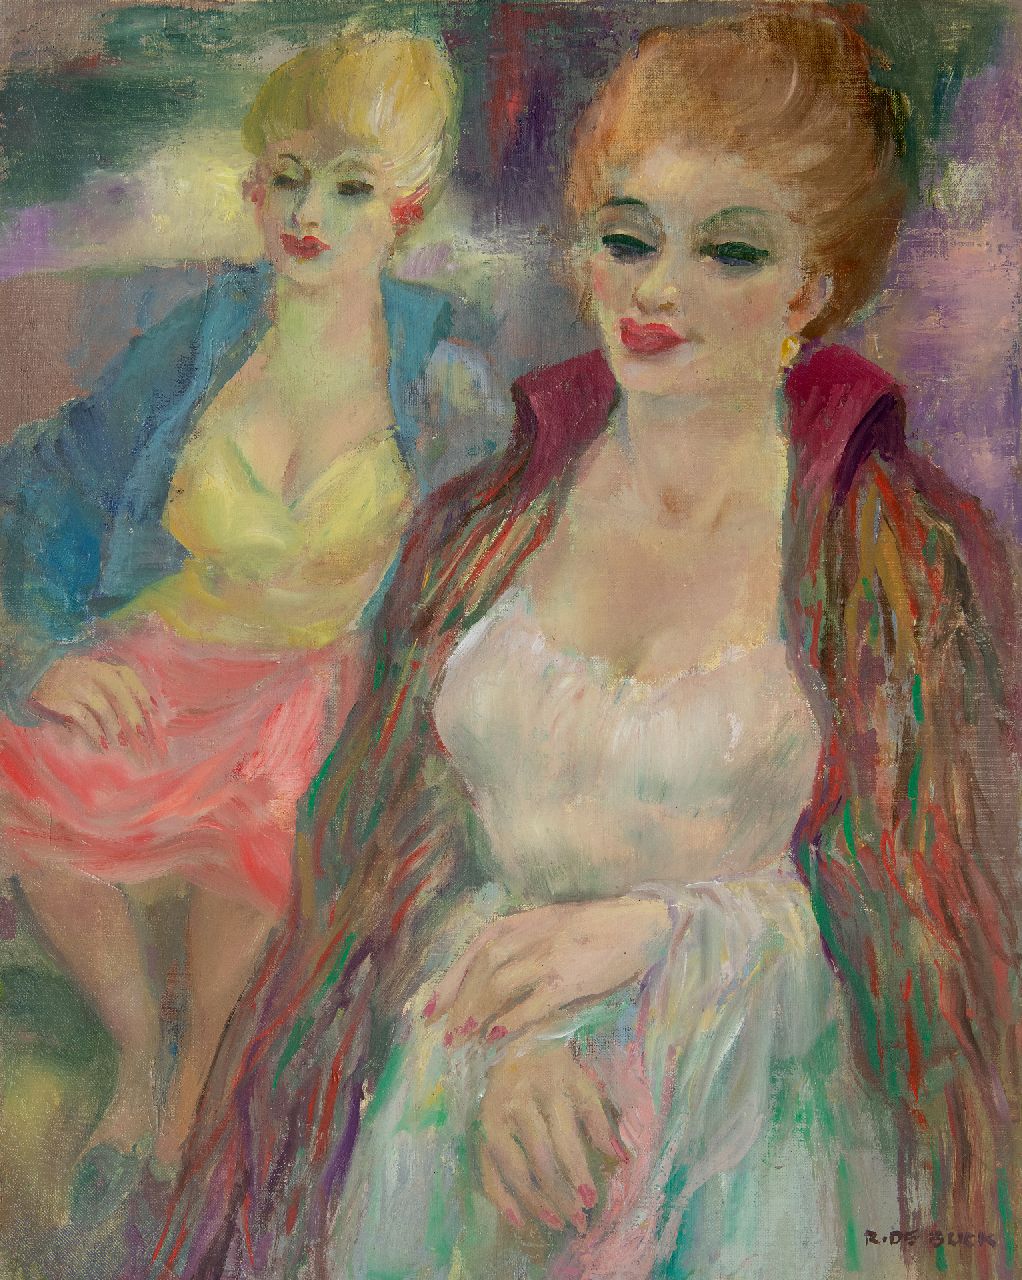 Buck R. de | Raphaël de Buck | Schilderijen te koop aangeboden | Twee vrouwen, olieverf op doek 64,1 x 51,2 cm, gesigneerd rechtsonder